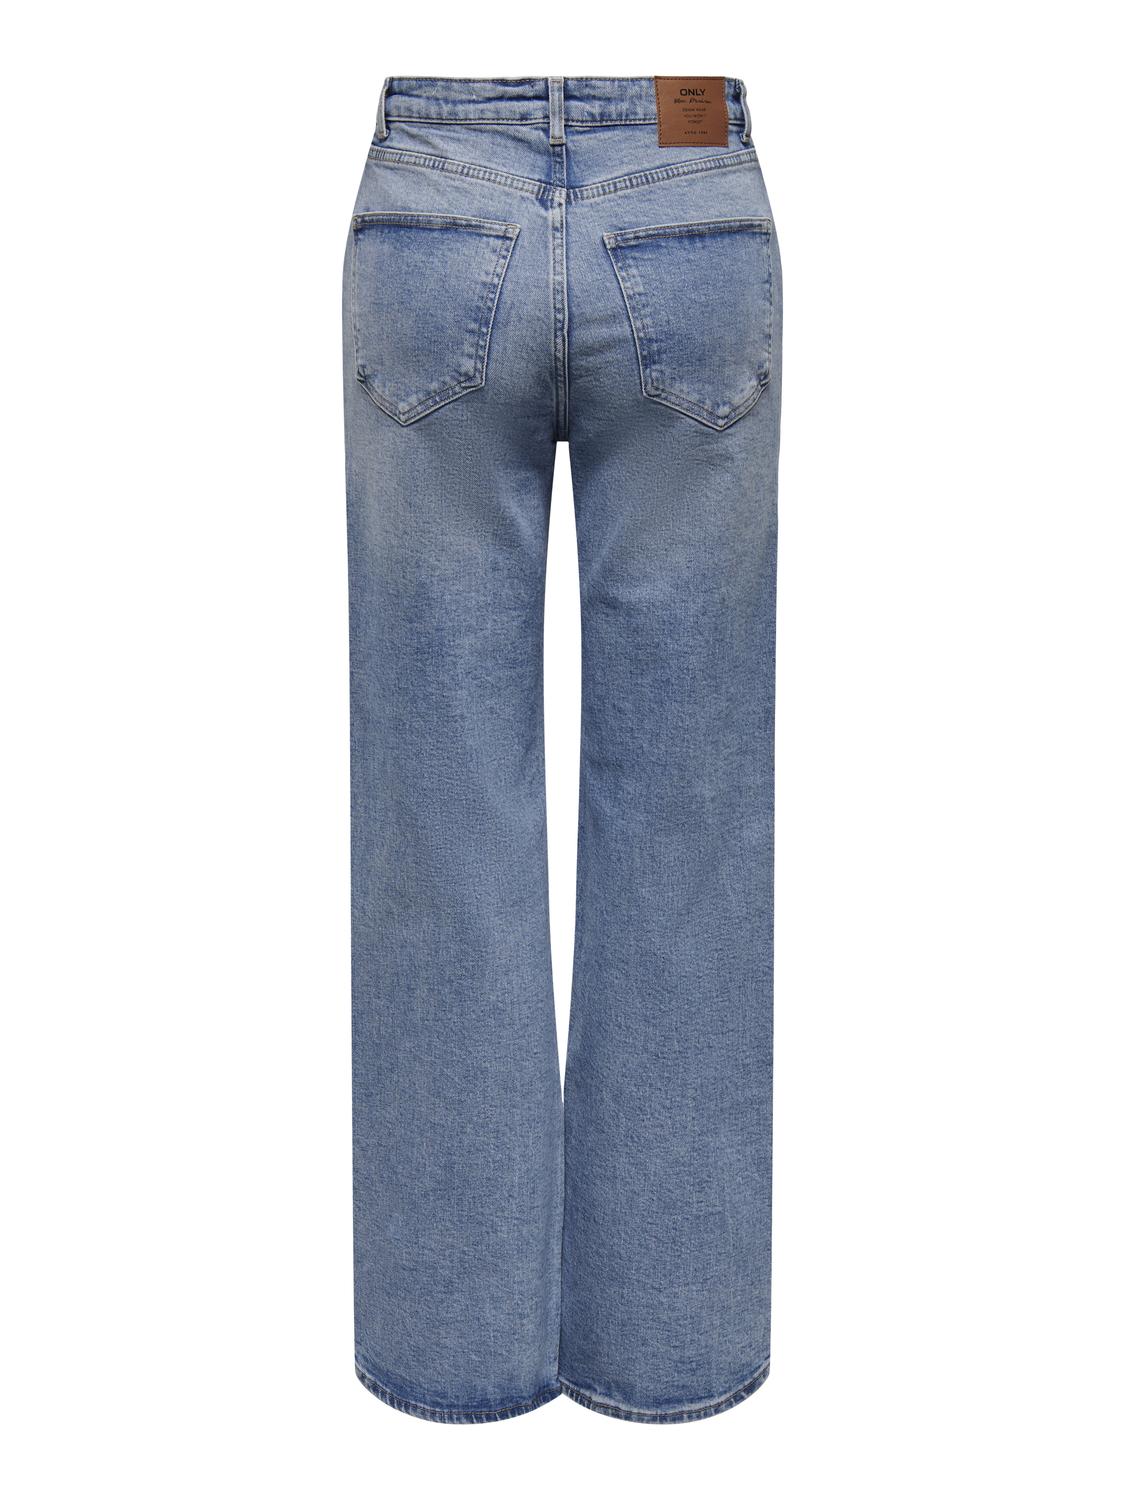 ONLJUICY Jeans - Medium Blue Denim